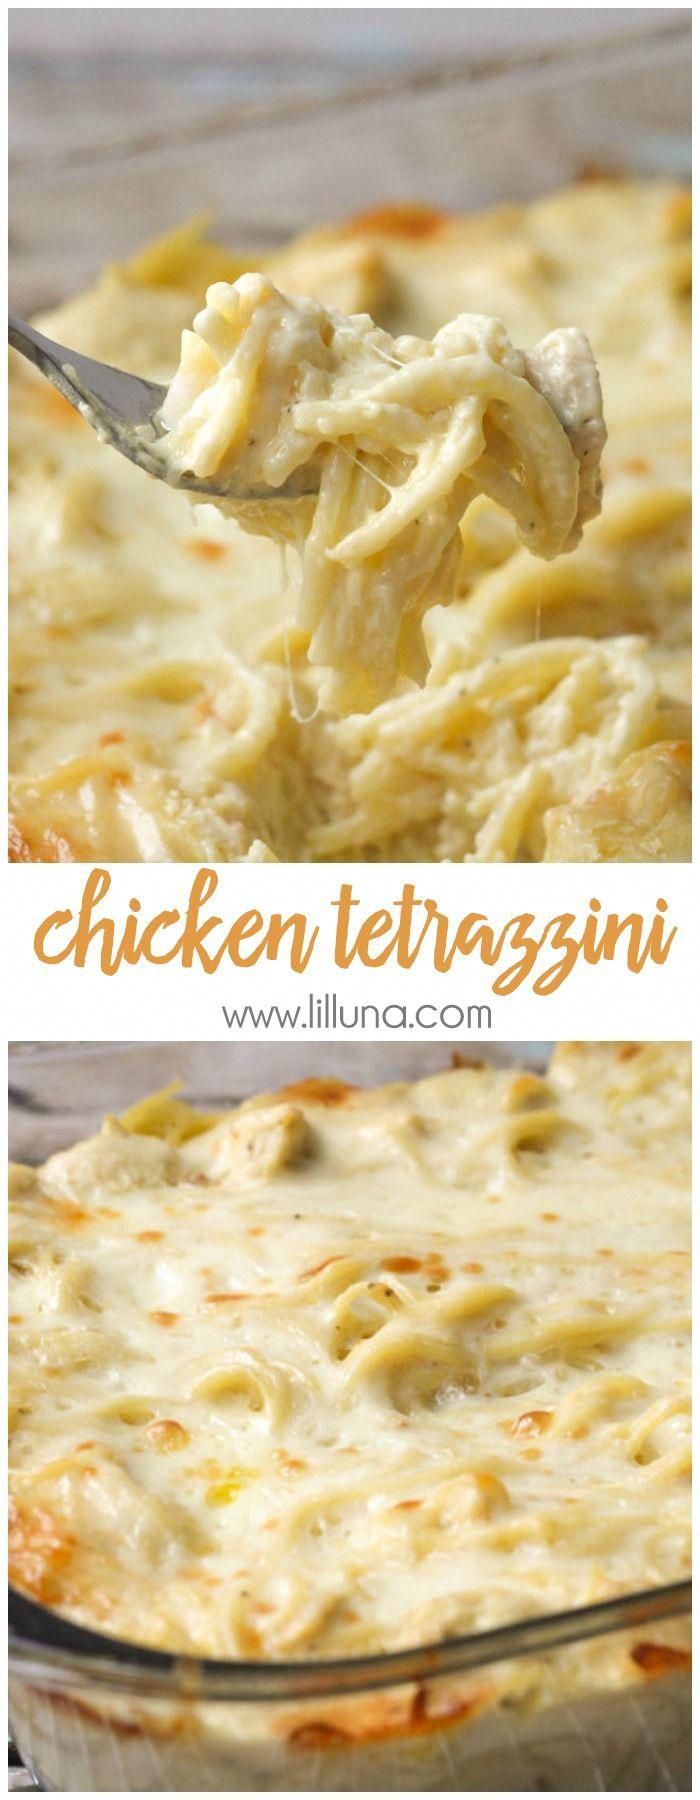 Easy Chicken Tetrazzini Recipe (+VIDEO) | Lil' Luna -   19 turkey tetrazzini recipe easy ideas